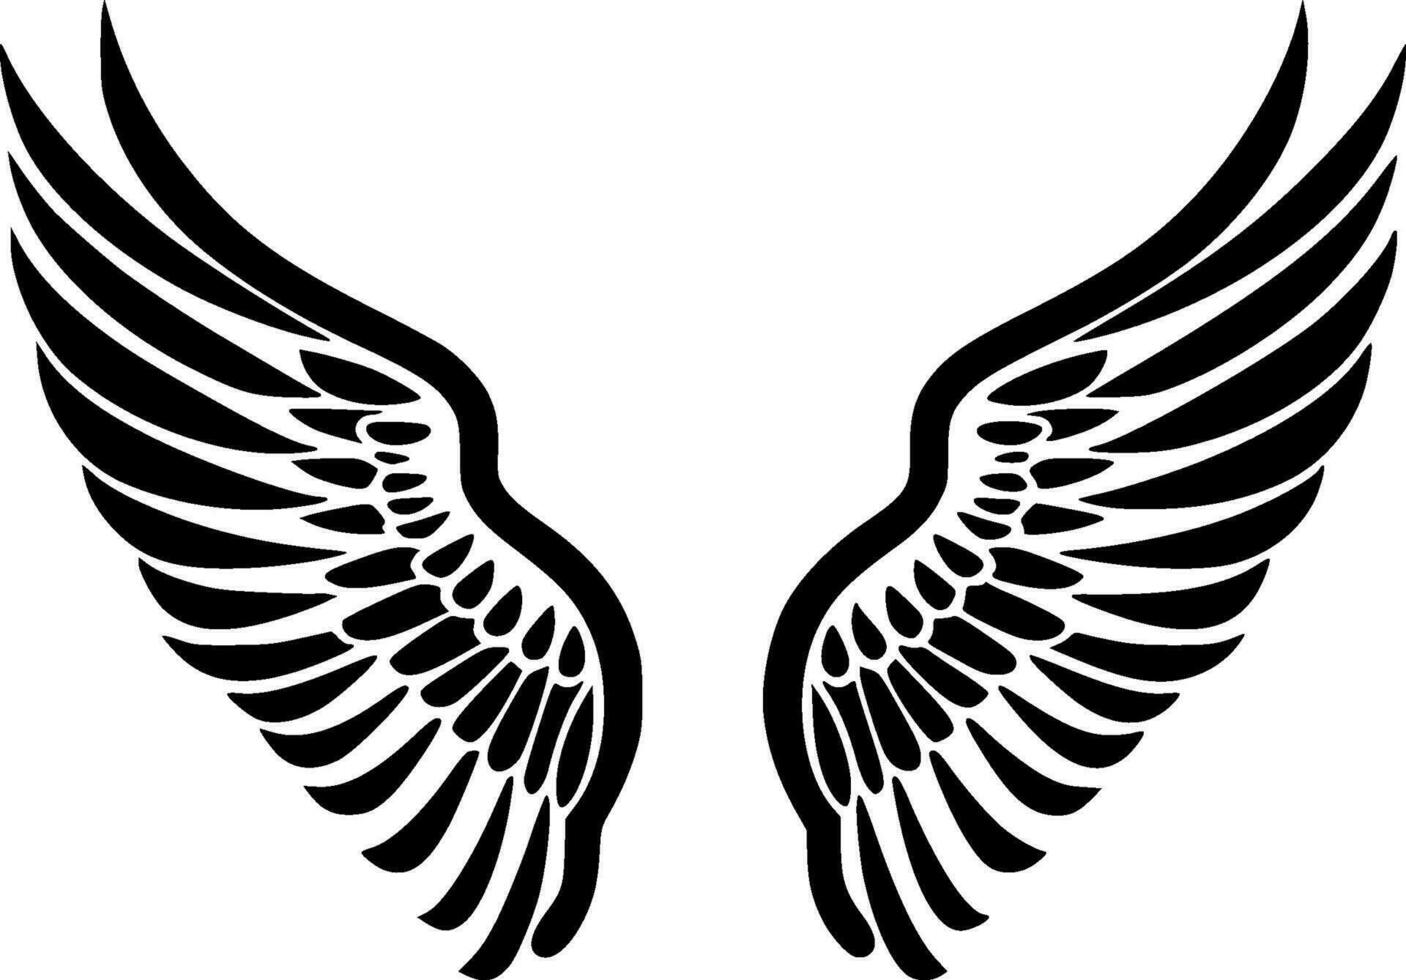 Engel Flügel - - schwarz und Weiß isoliert Symbol - - Vektor Illustration